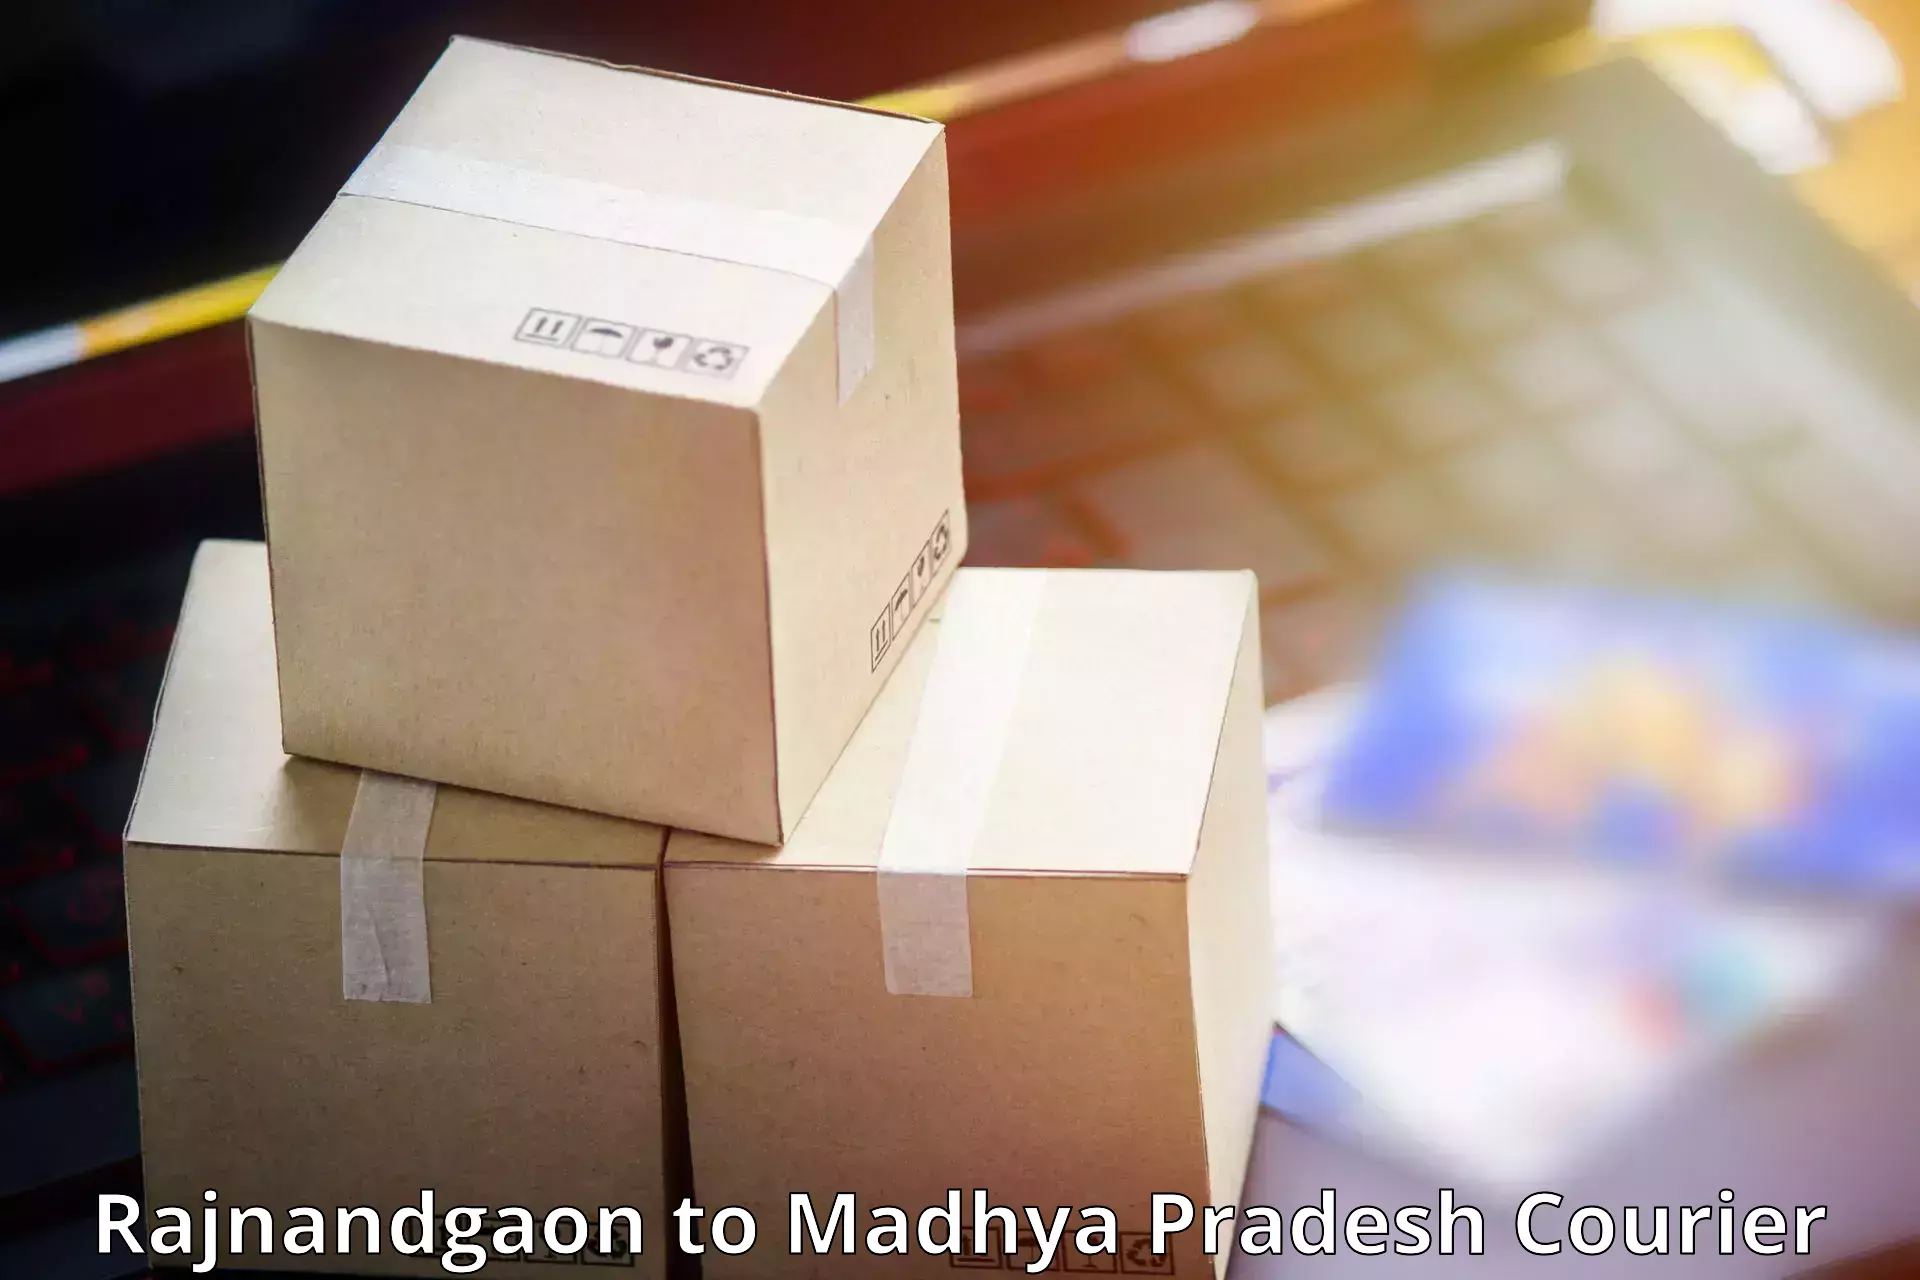 User-friendly delivery service Rajnandgaon to Khirkiya